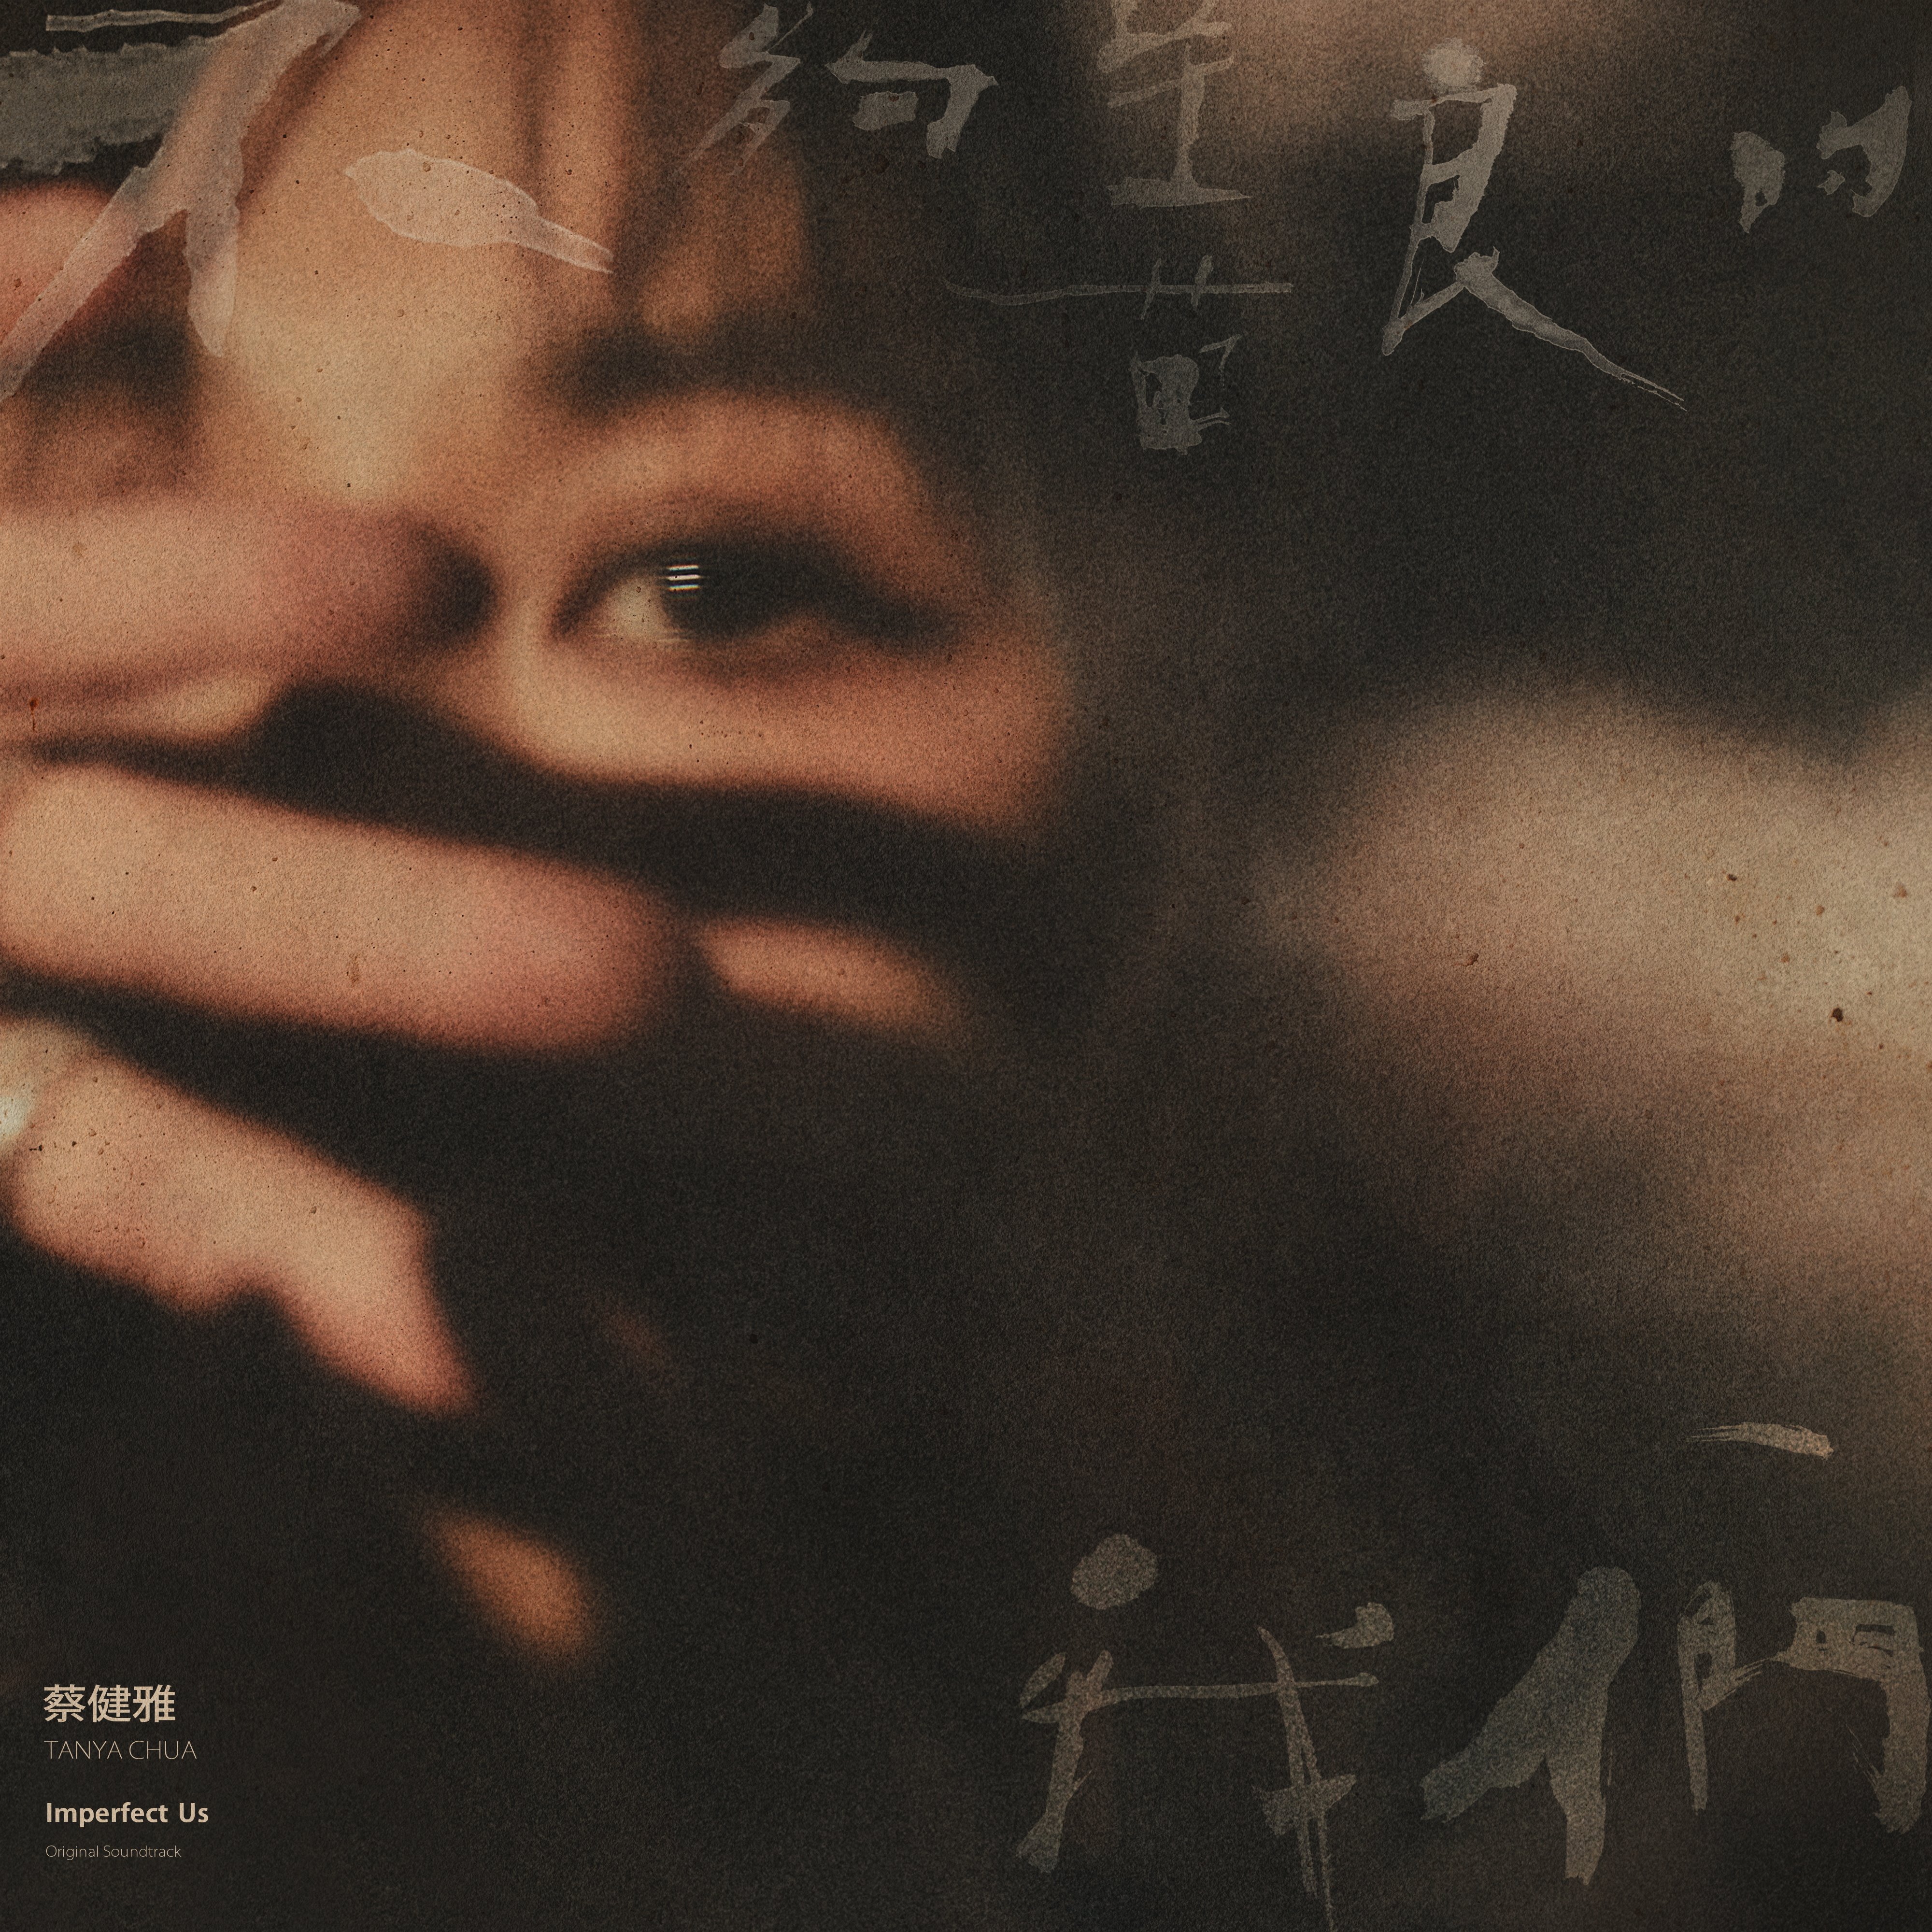 蔡健雅专辑《不够善良的我们》[无损FLAC/高品质MP3/LRC歌词]|51听音乐